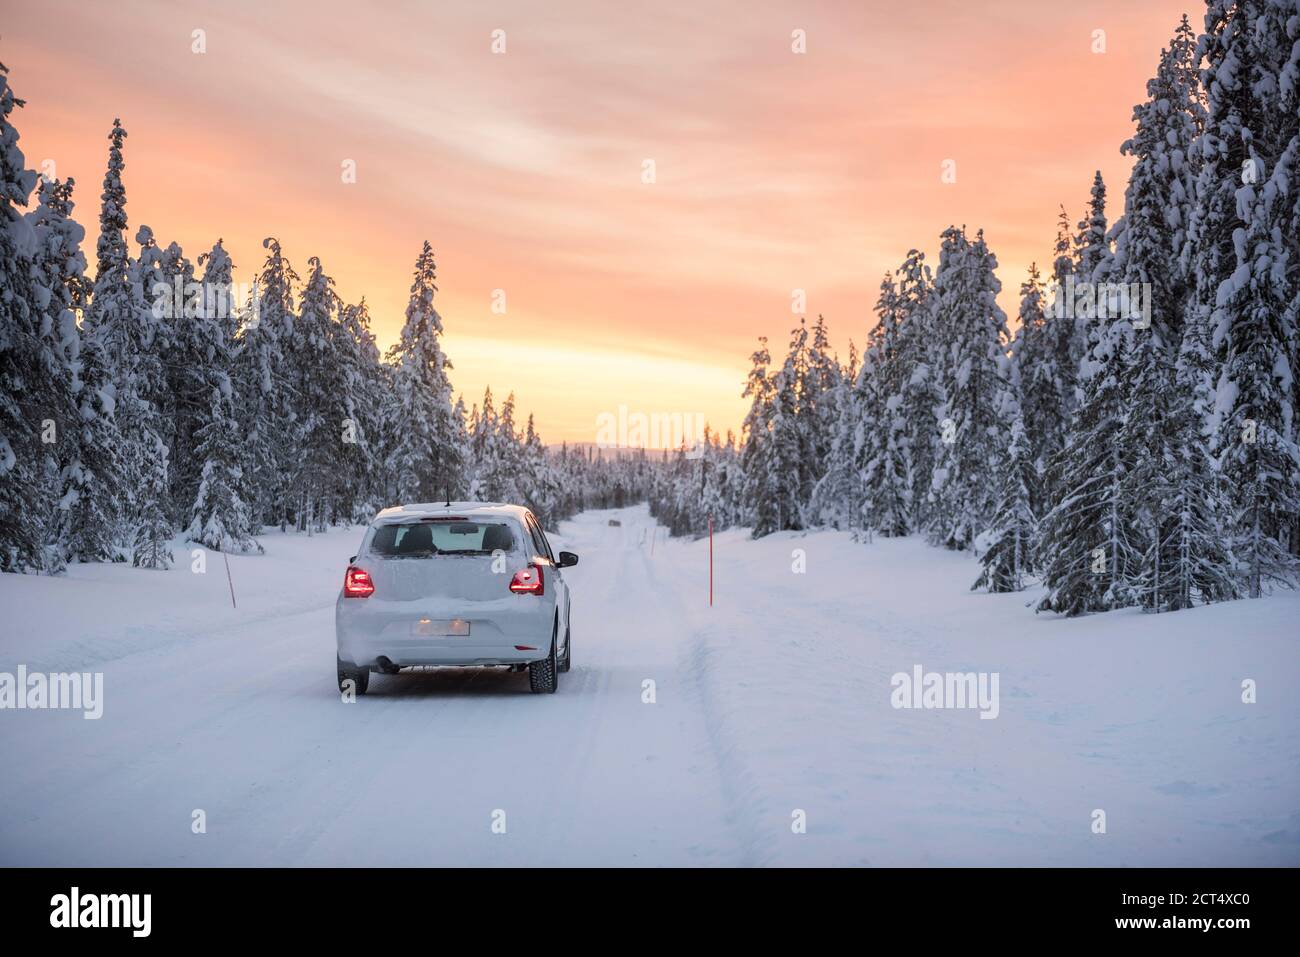 Mauvaises conditions de conduite sur des routes verglacées dangereuses dans des paysages hivernaux glissants, enneigés et enneigés en Laponie, Finlande, Europe Banque D'Images